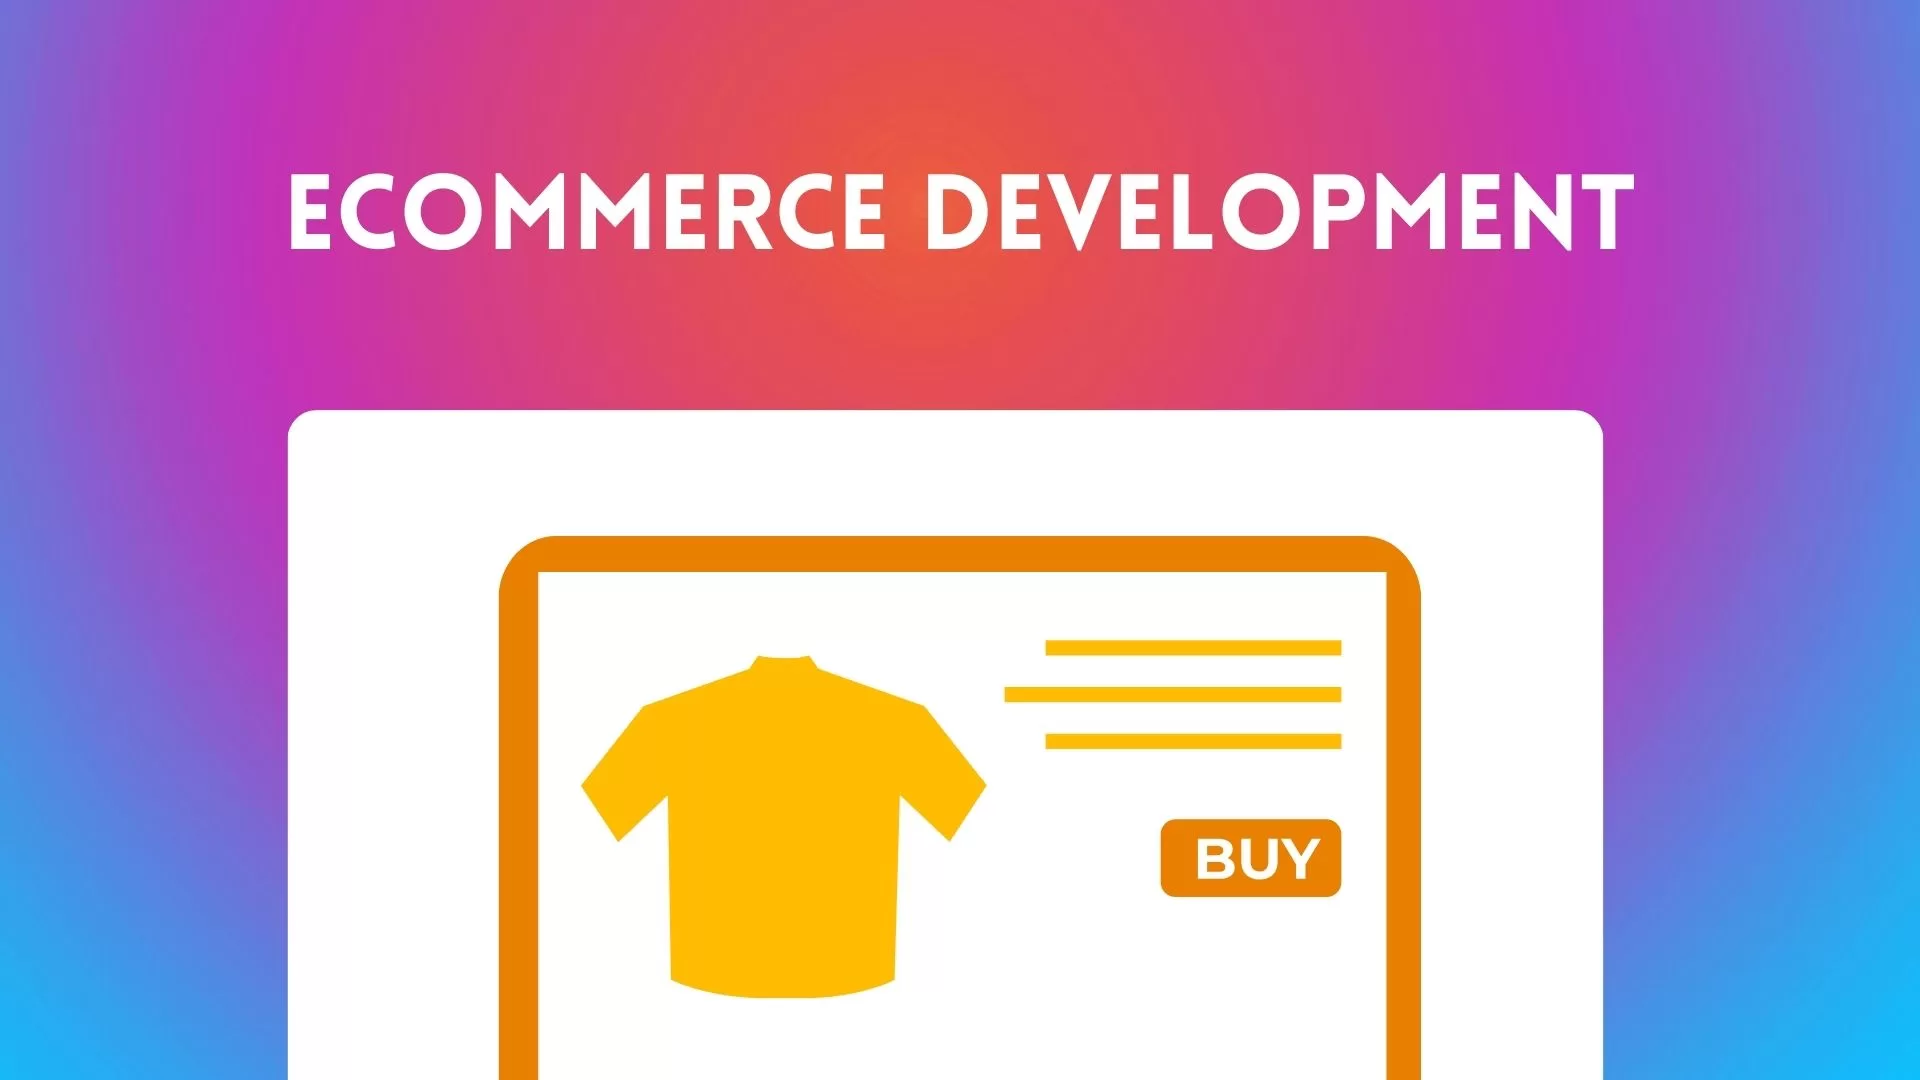 E-Commerce Development